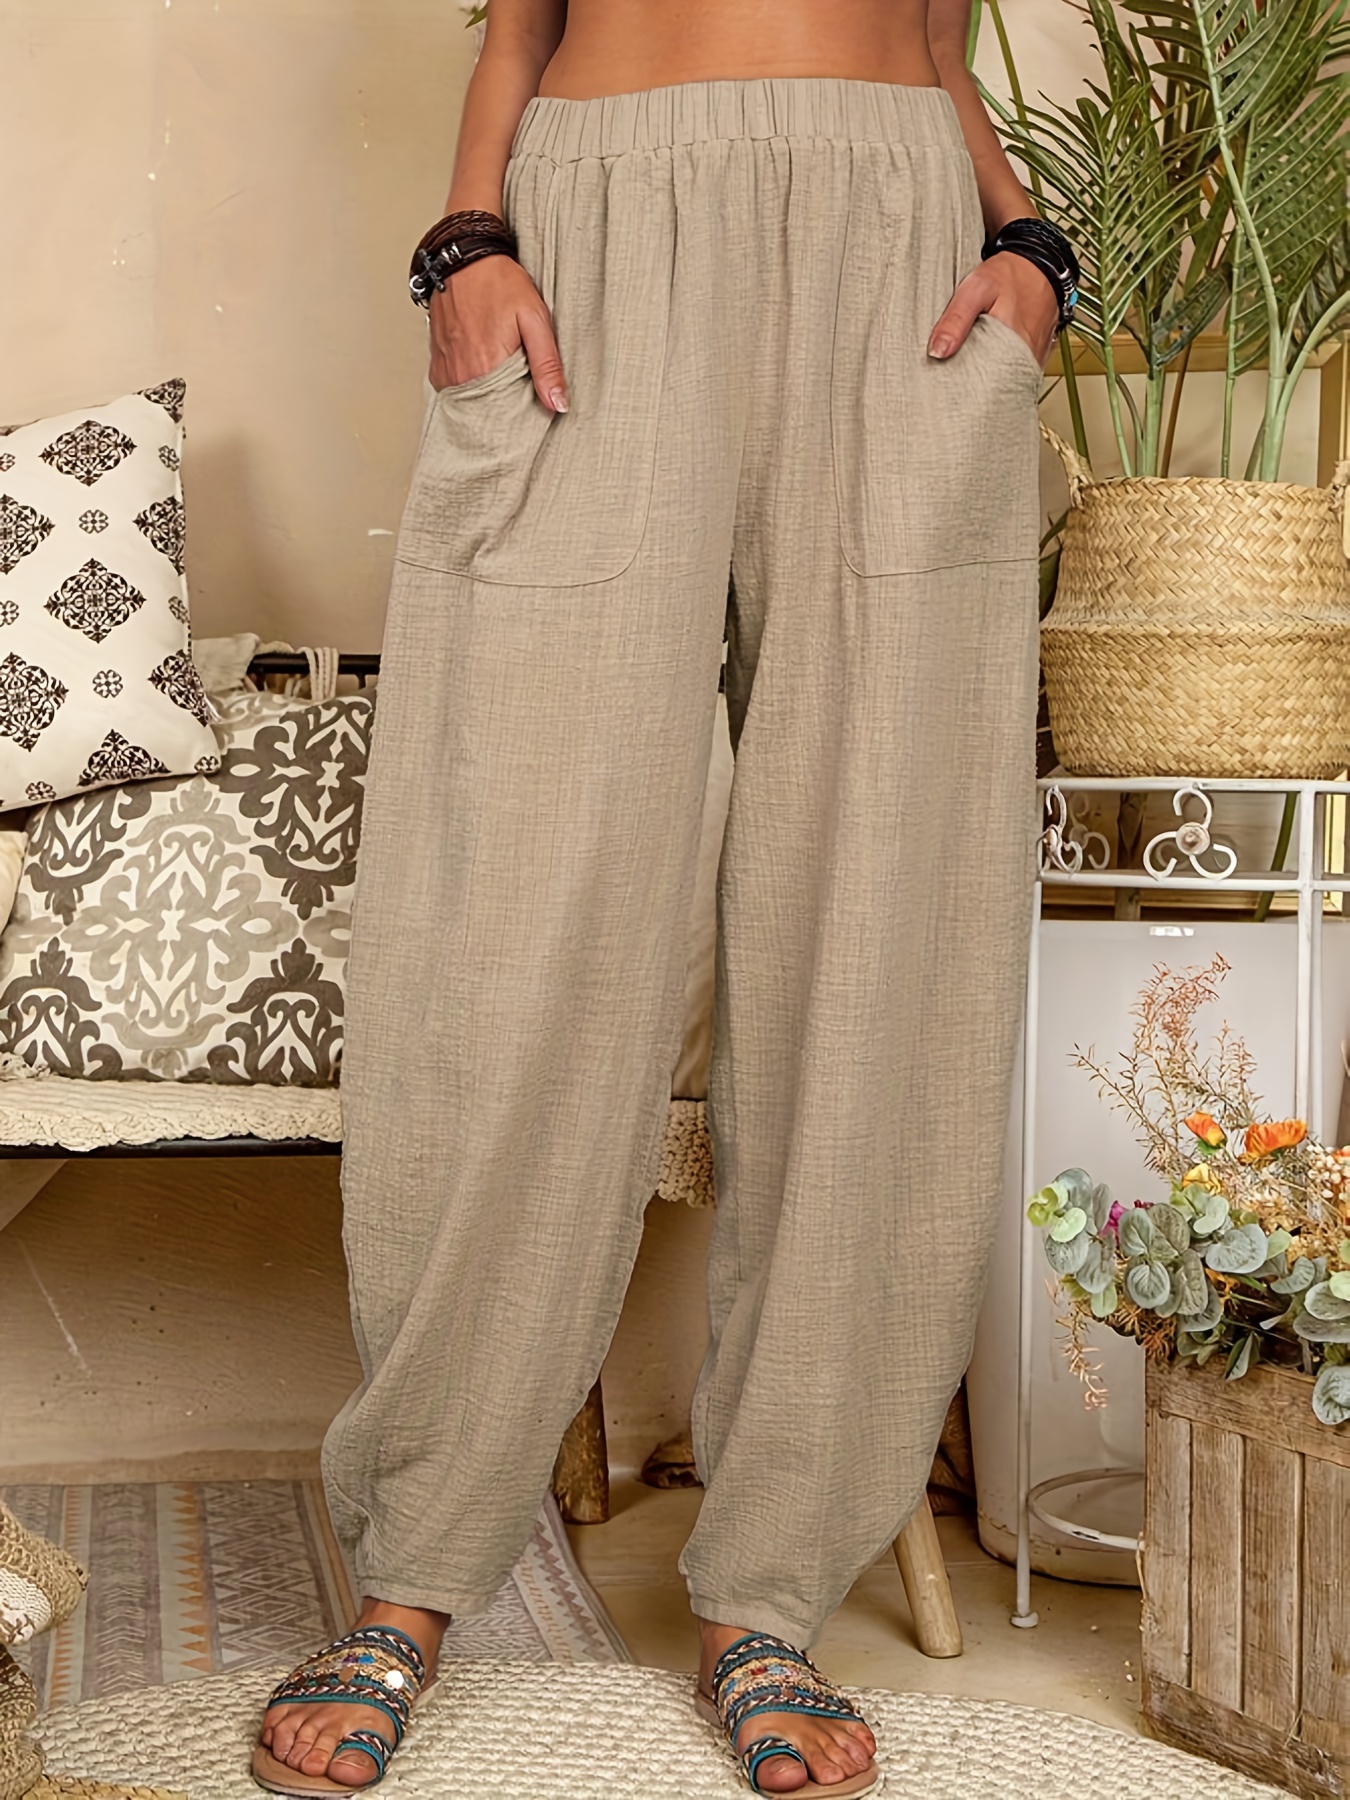 Summer Women's Pants Cotton Linen Large Size Casual Loose Ankle-length  Capri Pants Drawstring Harem Pants Women's W…